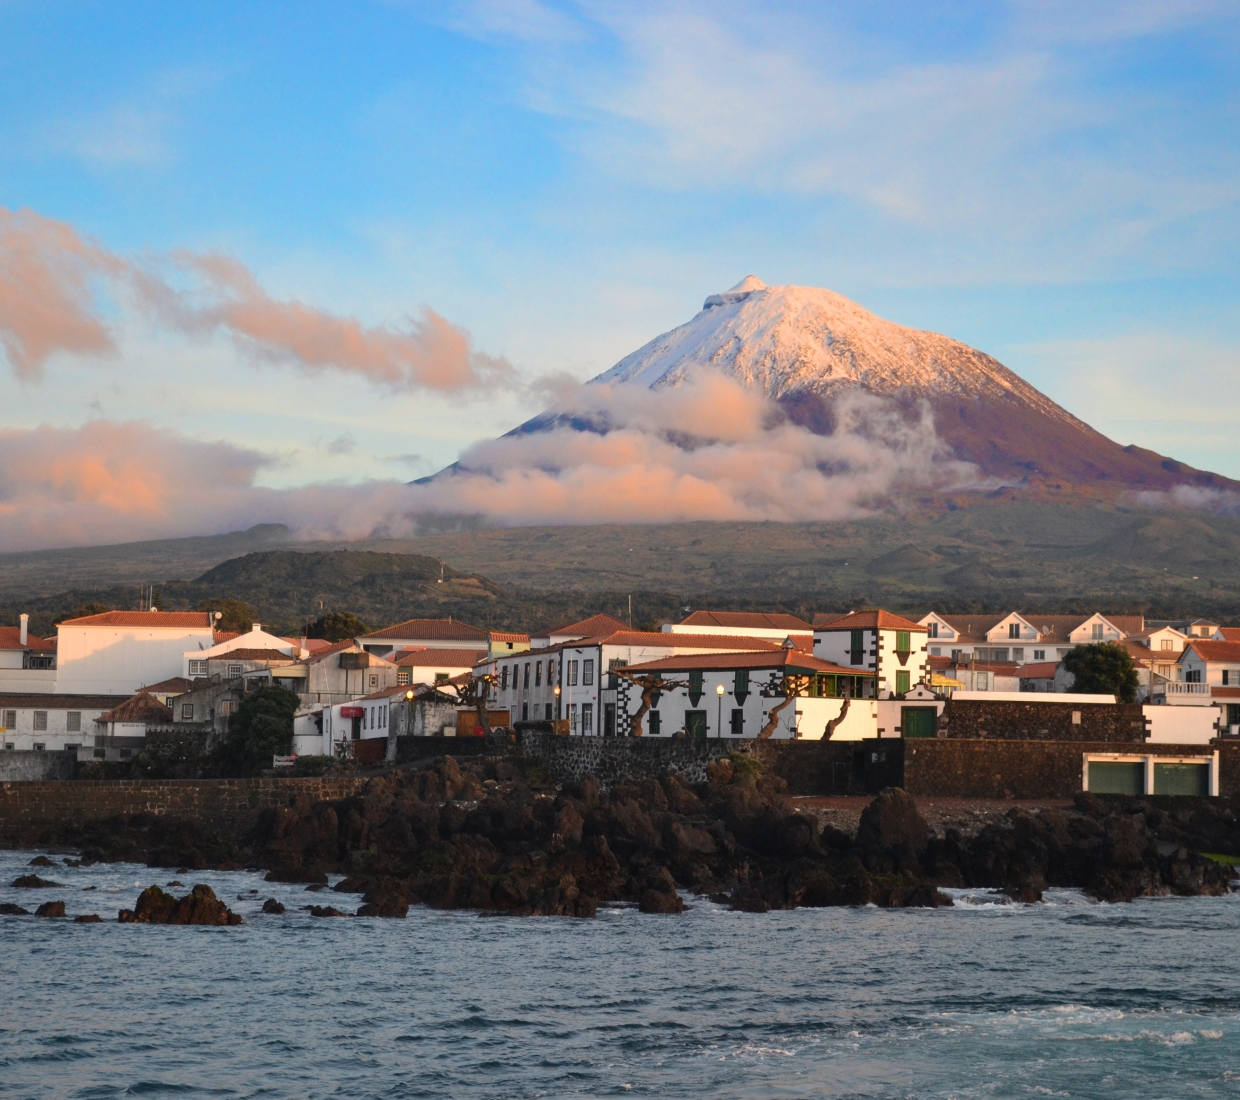 Seleção dos melhores e mais bonitos hotéis e casas de férias em Pico